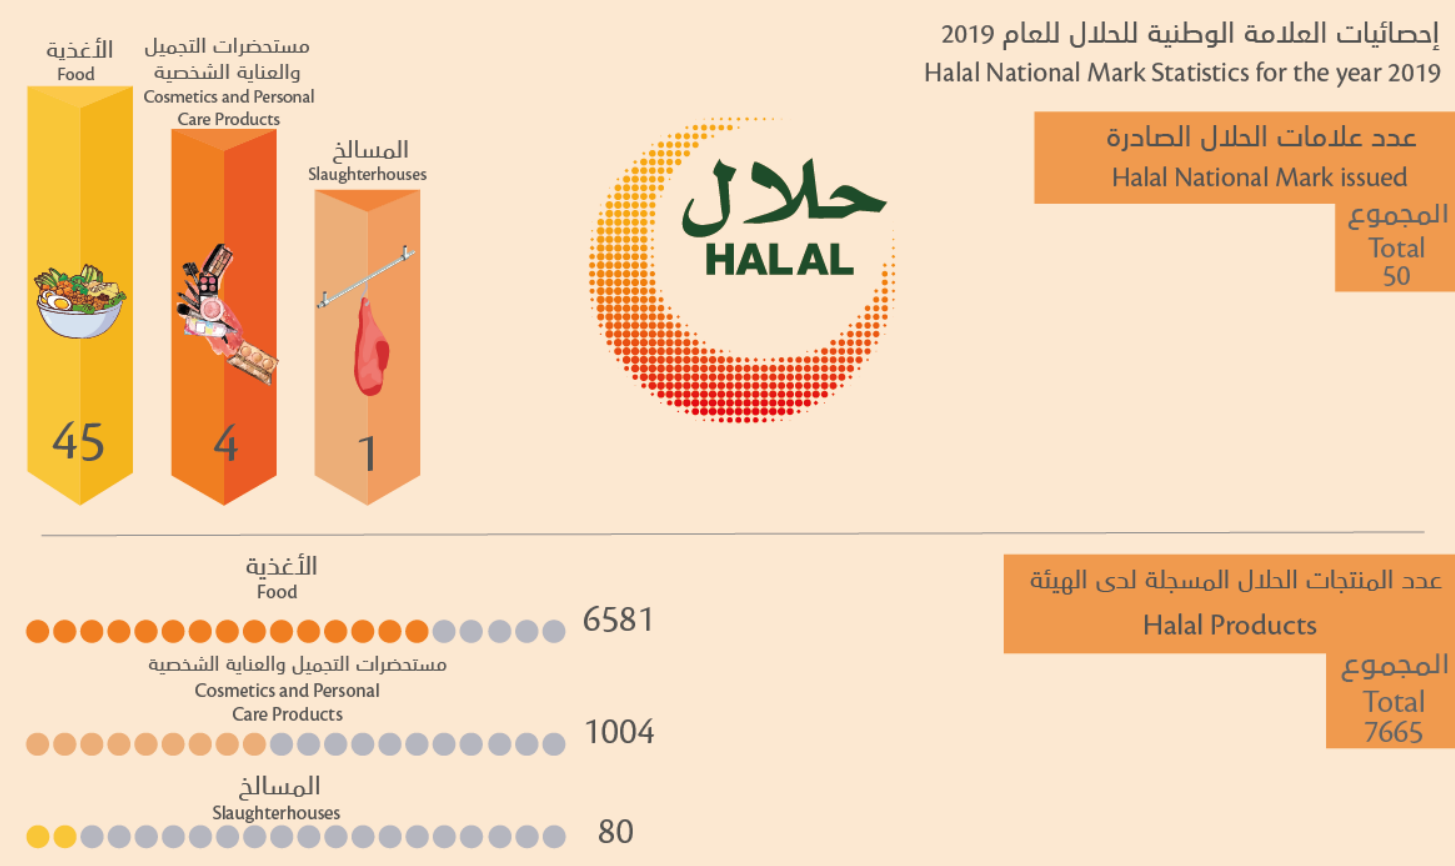 아랍에미리트(UAE) 정부의 할랄 인증 표시